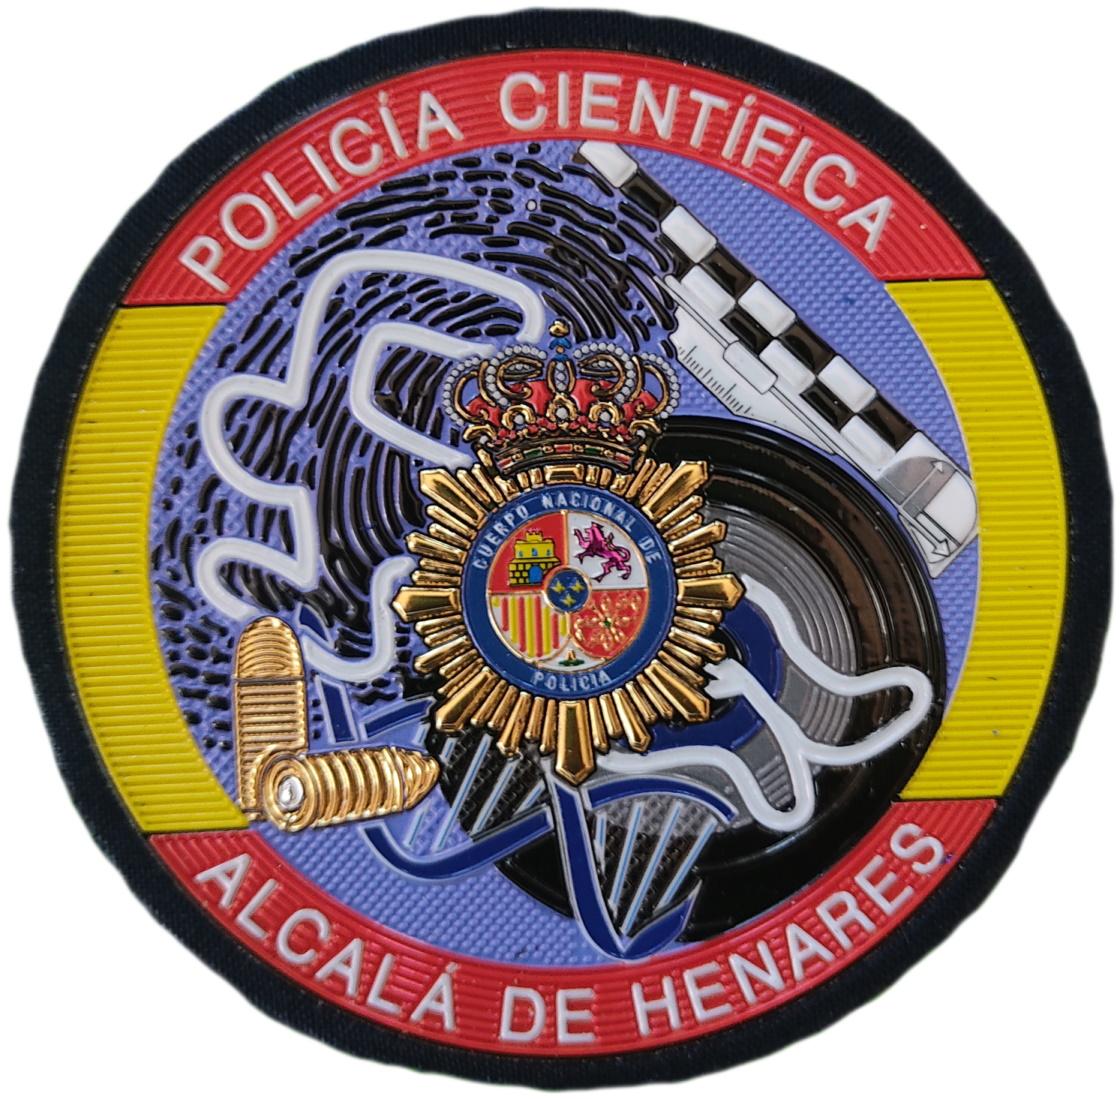 Policía Nacional CNP Científica Alcalá de Henares parche insignia emblema distintivo